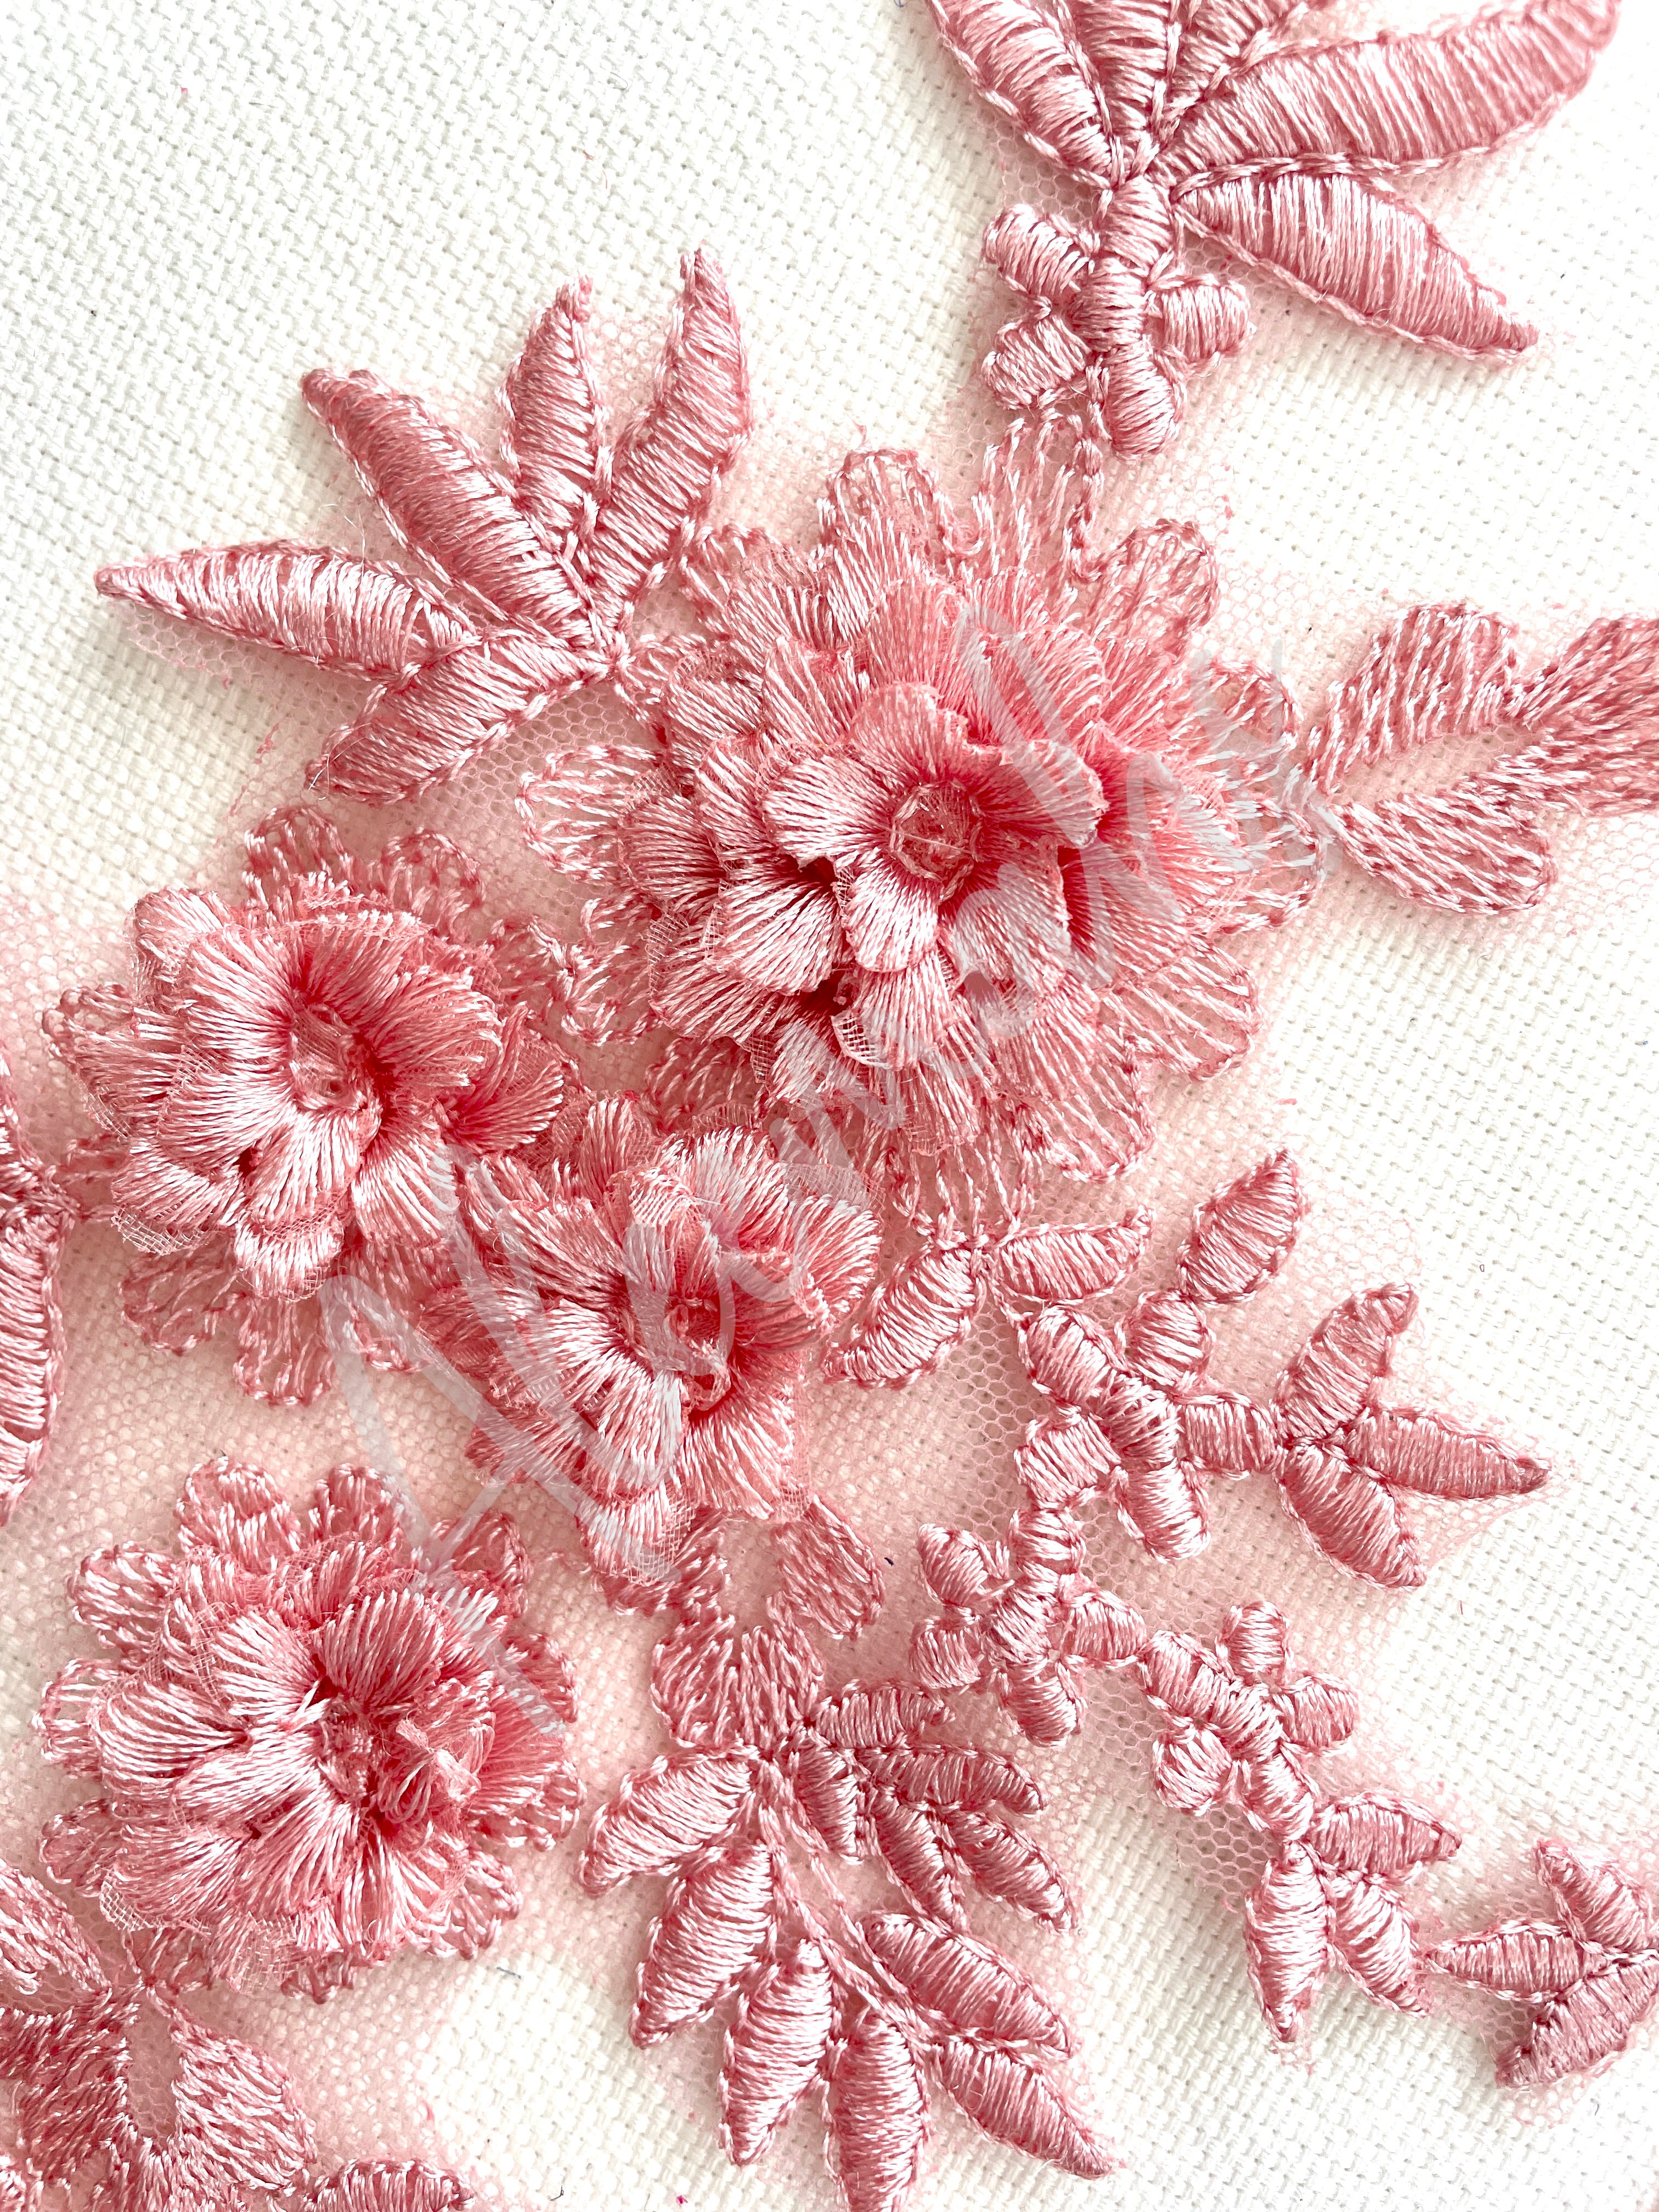 LA-033: 3D floral lace applique pair: Dusty Pink